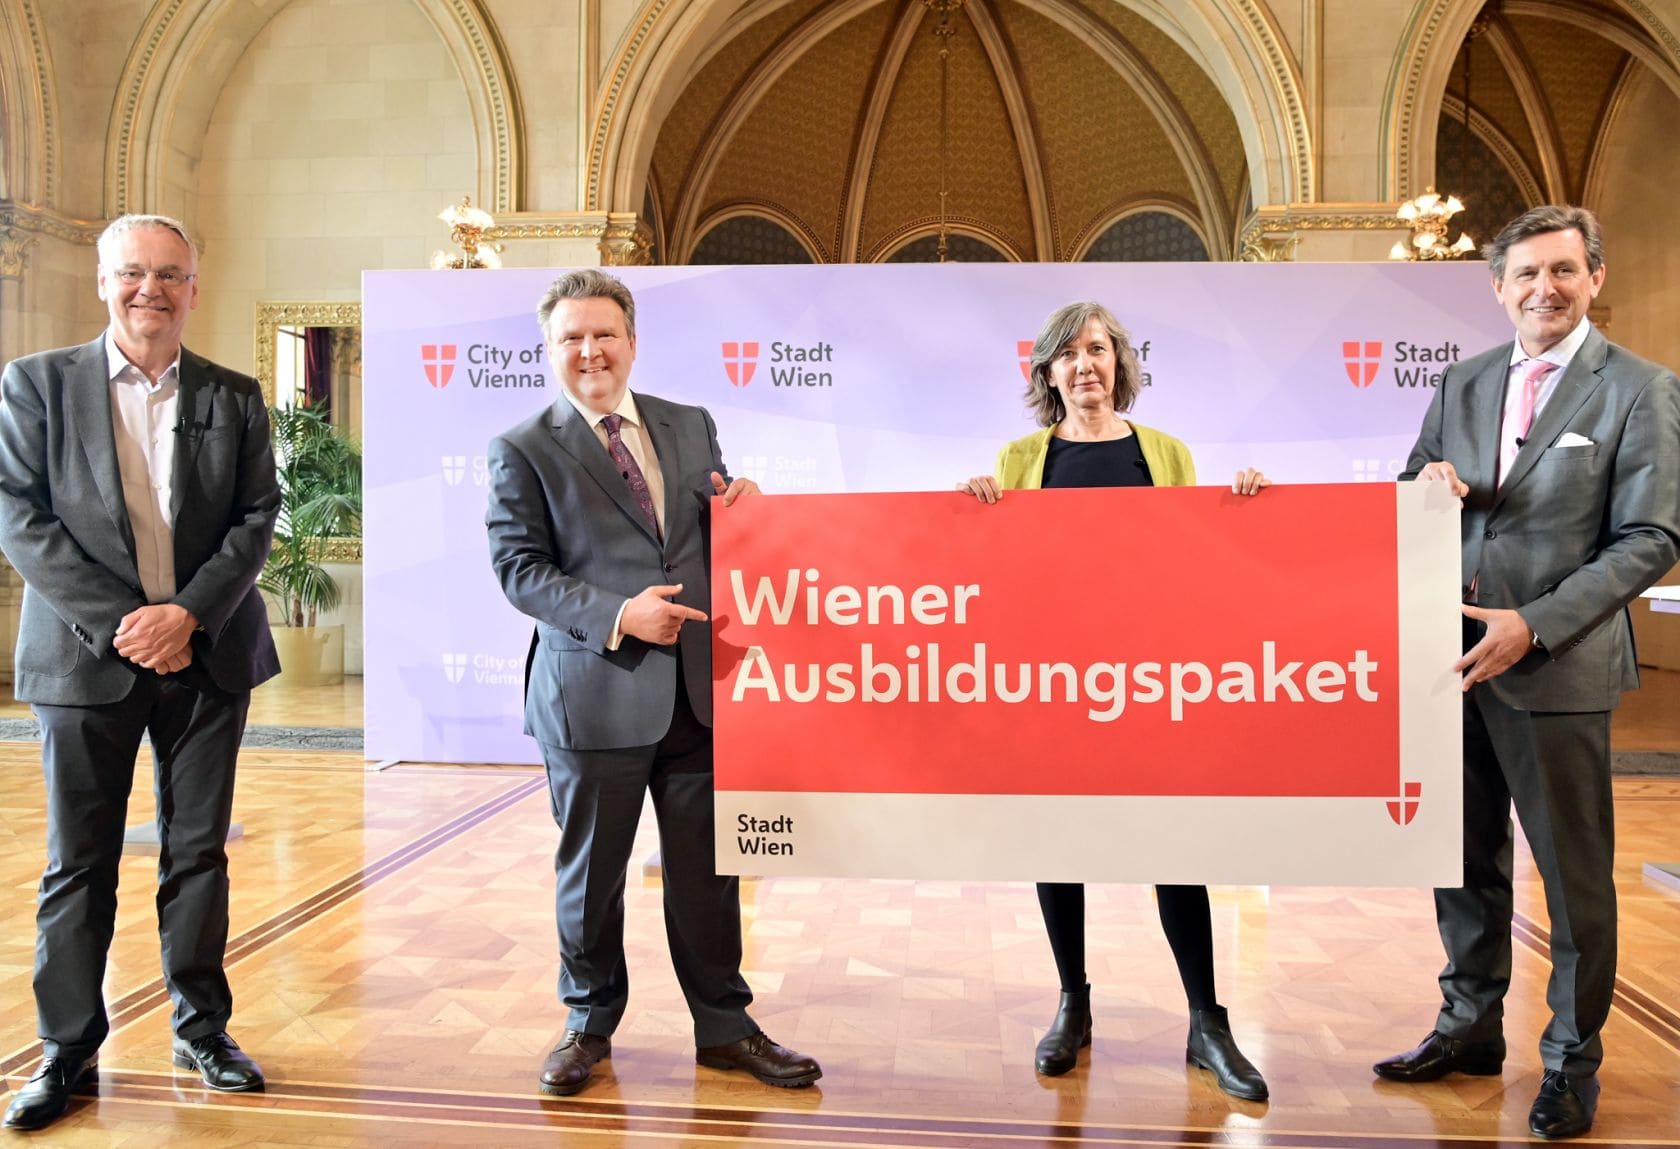 Bürgermeister Ludwig und Vizebürgermeisterin Hebein mit Plakat - Wiener Ausbildungspaket